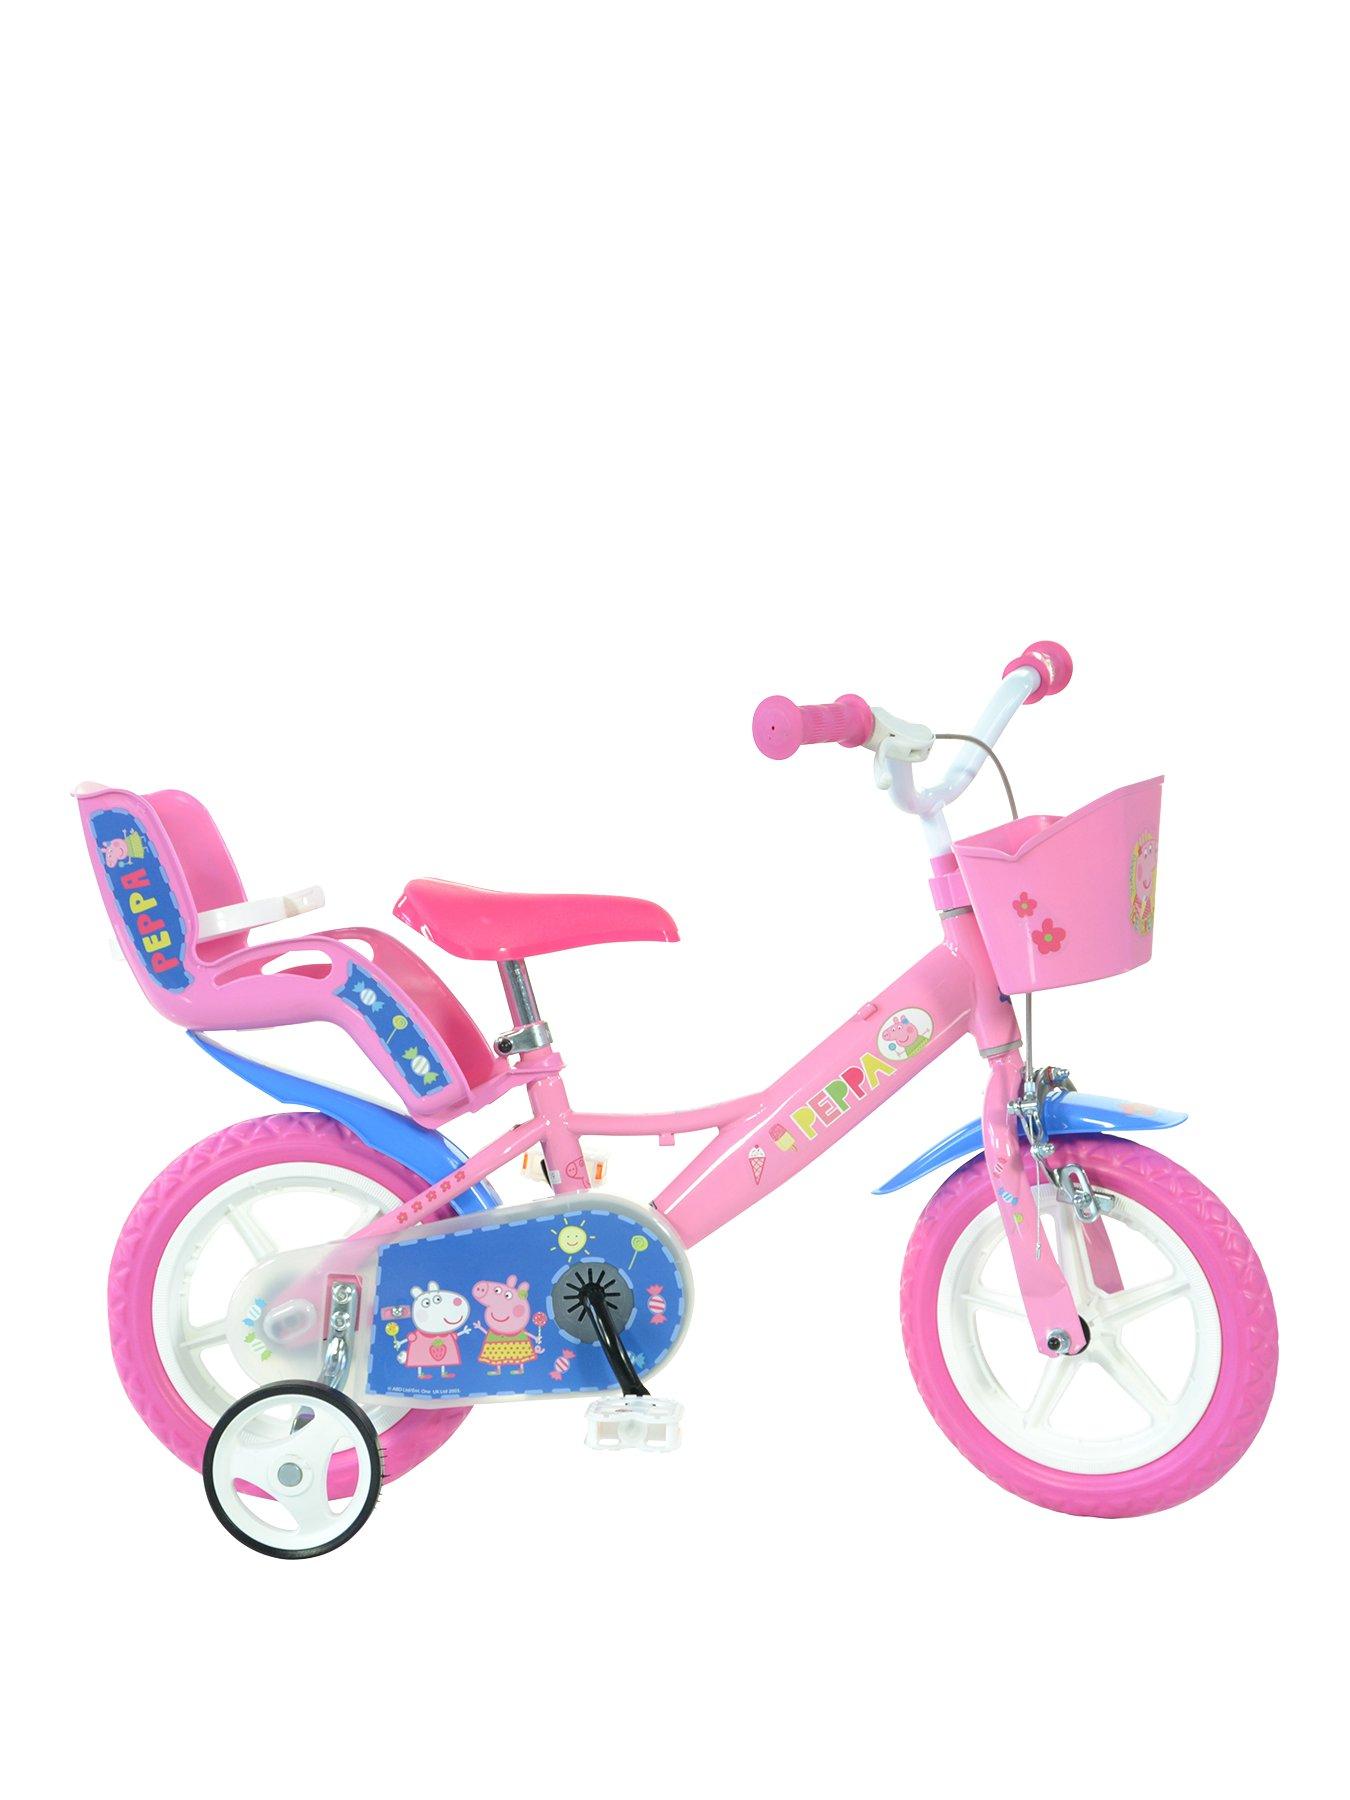 peppa pig on a bike toy